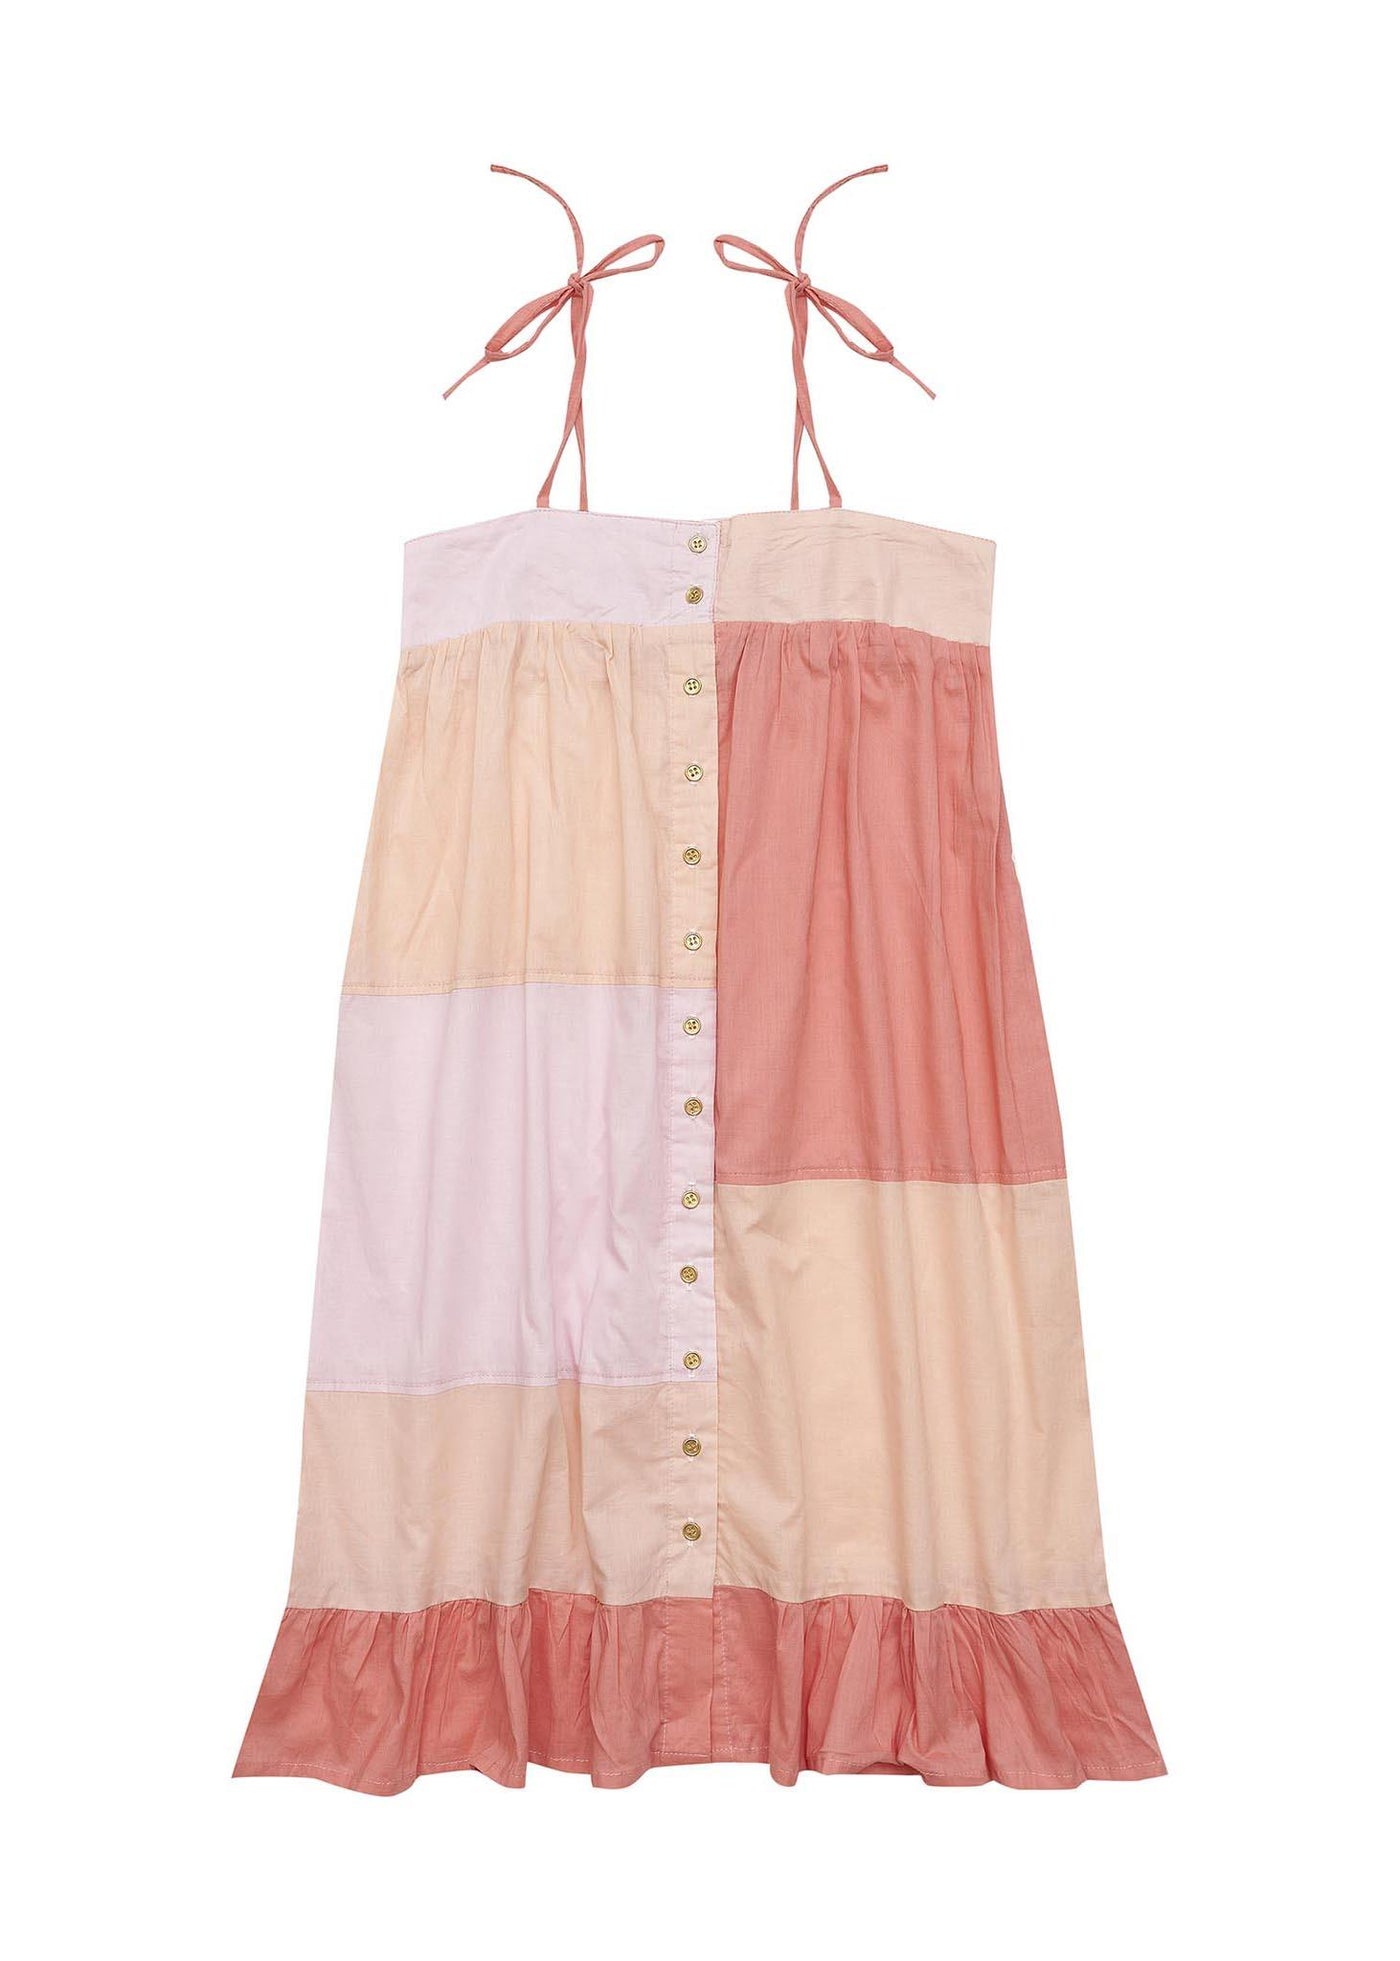 Shelly Dress - Apricot Blush Sleeveless Dress Bella & Lace 